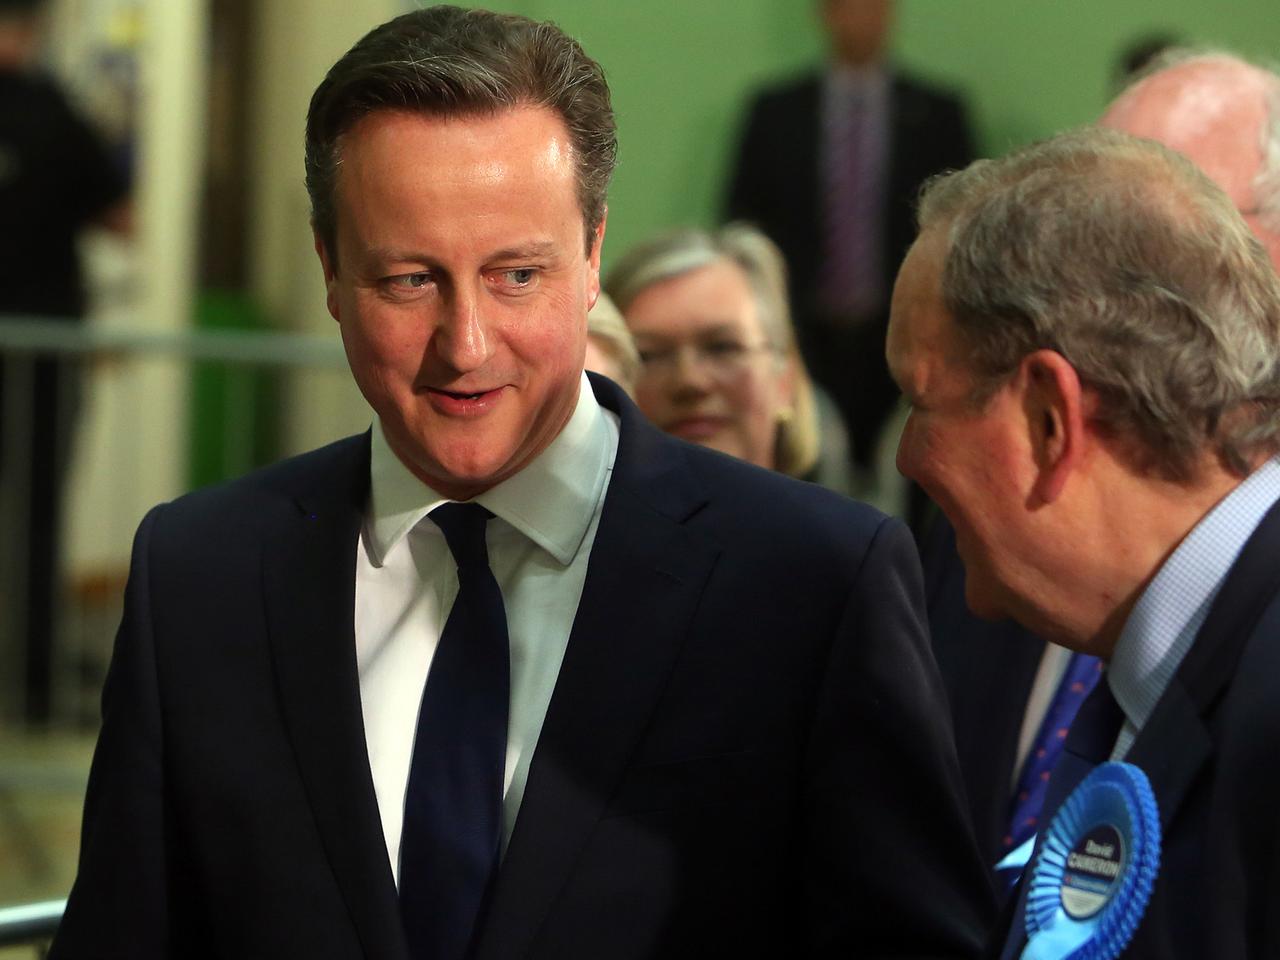 Prognosen zufolge konnten die Konservativen unter Premierminister Cameron Stimmen hinzugewinnen.